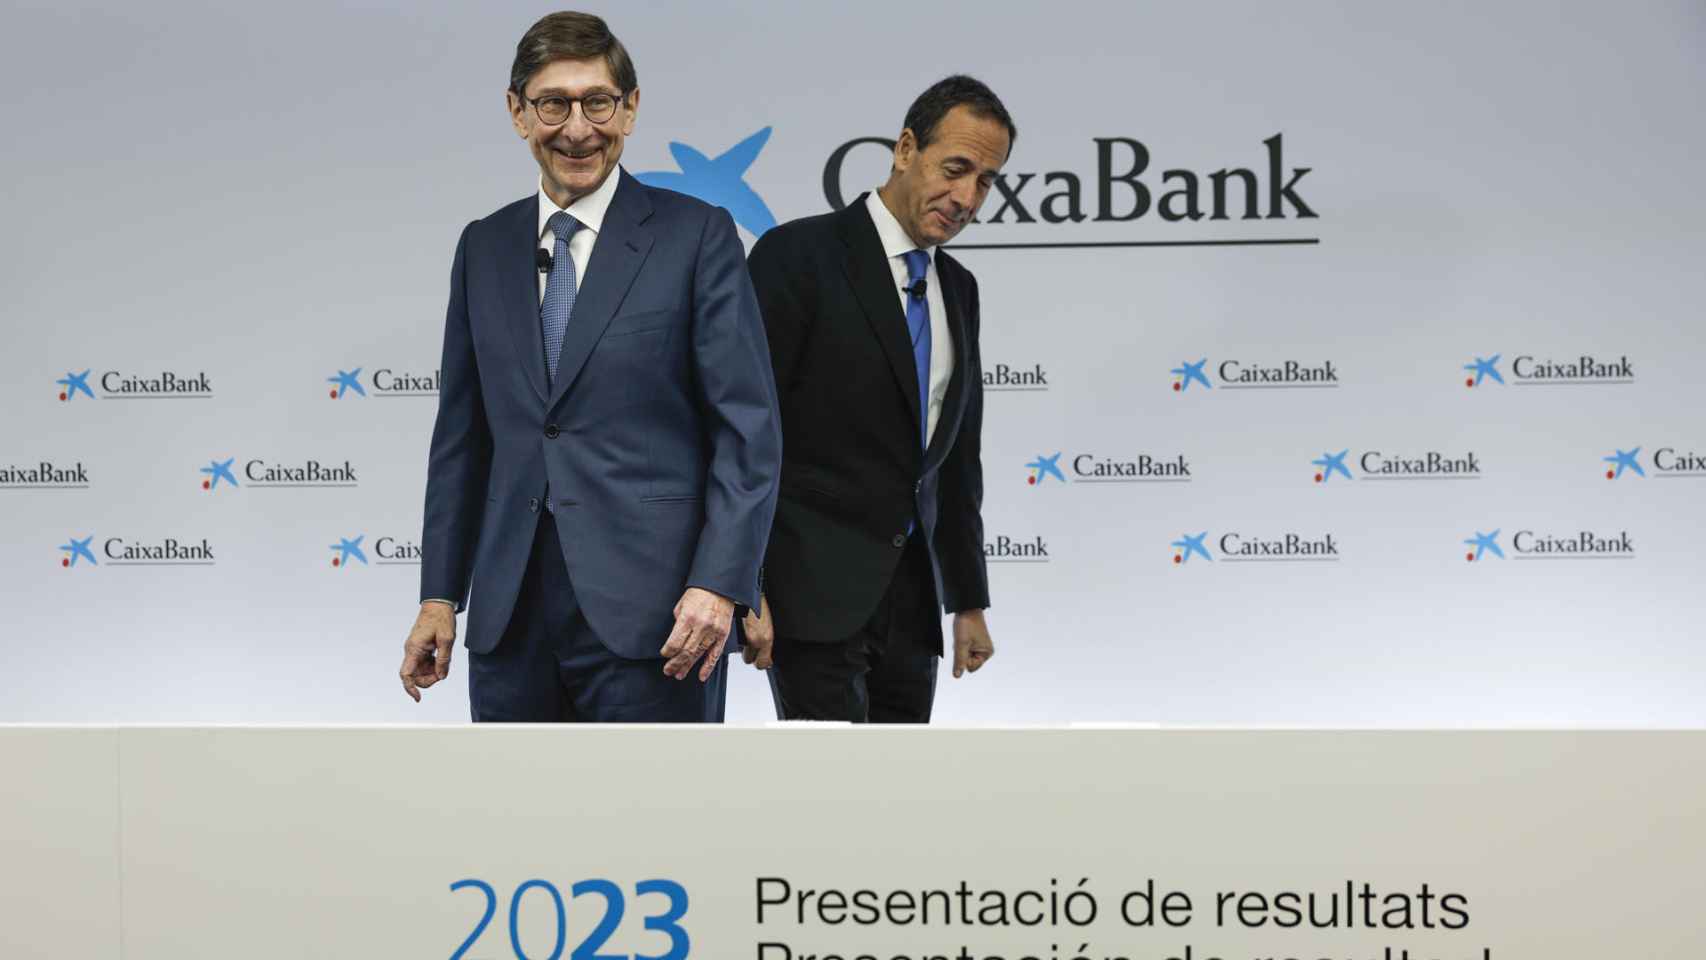 José Ignacio Goirigolzarri y Gonzalo Gortázar, presidente y CEO de CaixaBank, respectivamente, durante la última presentación de resultados del banco, celebrada el pasado 2 de febrero.